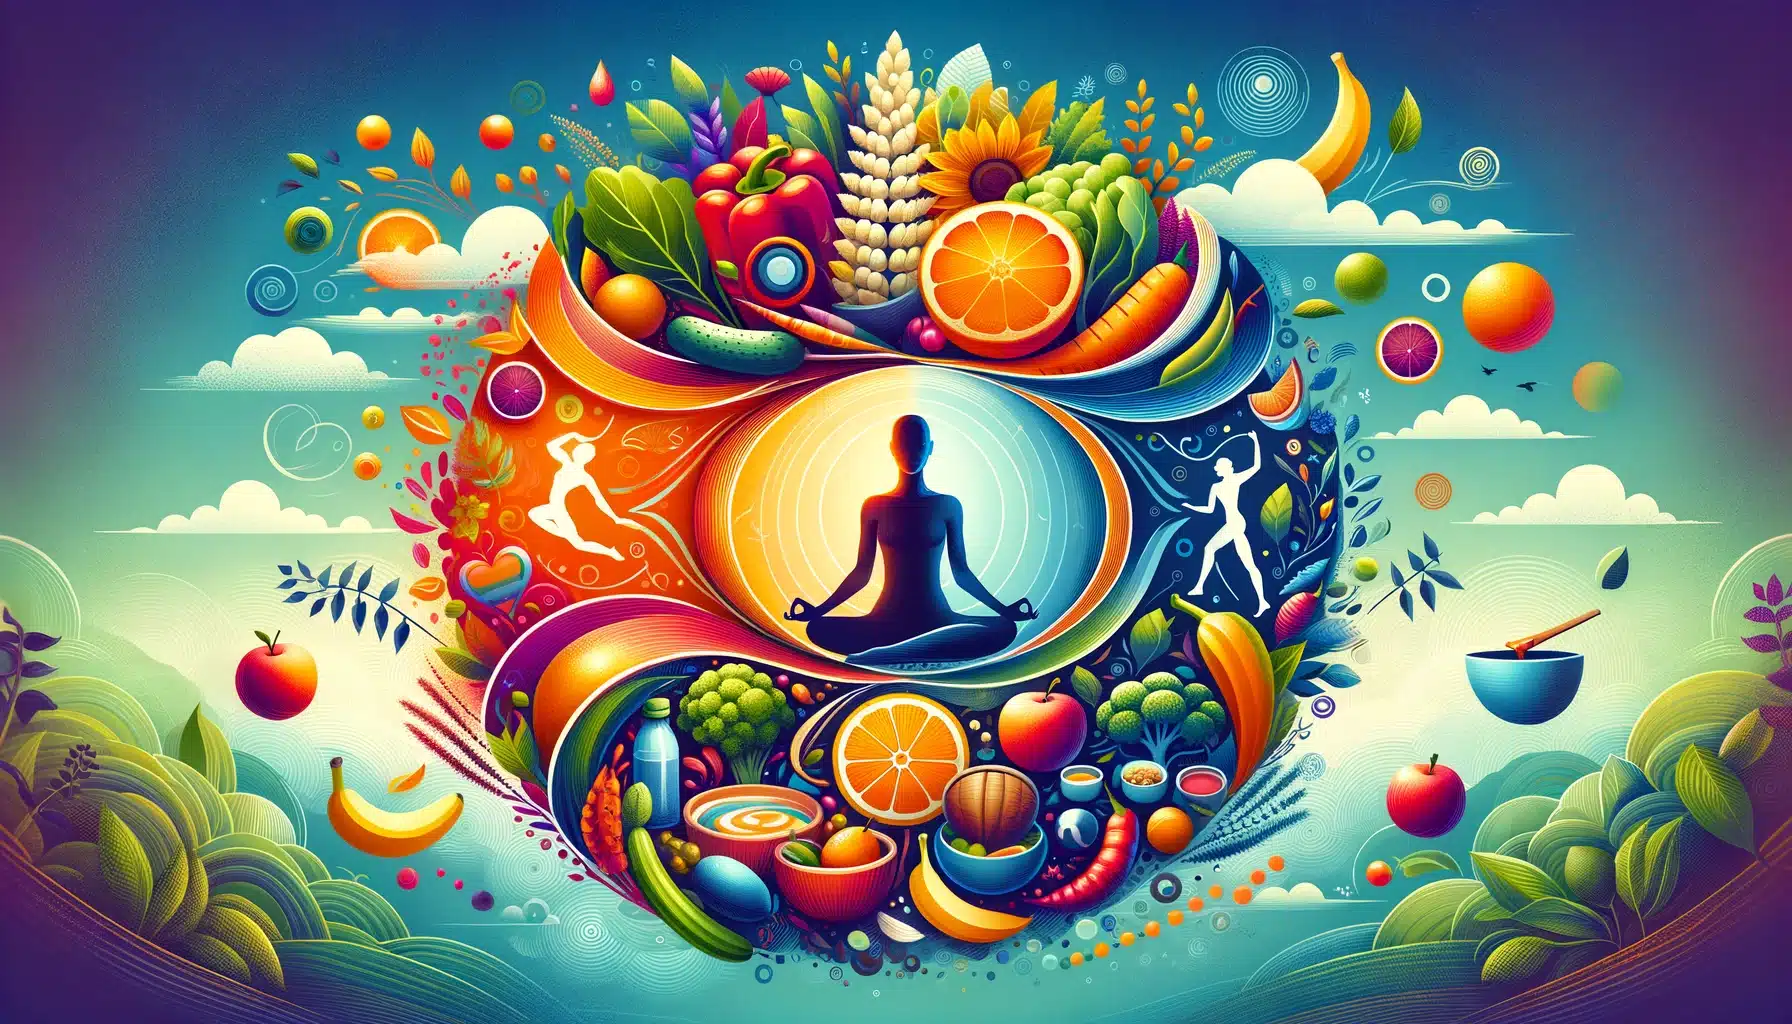 La ilustración refleja un equilibrio entre nutrición, actividad física y mindfulness